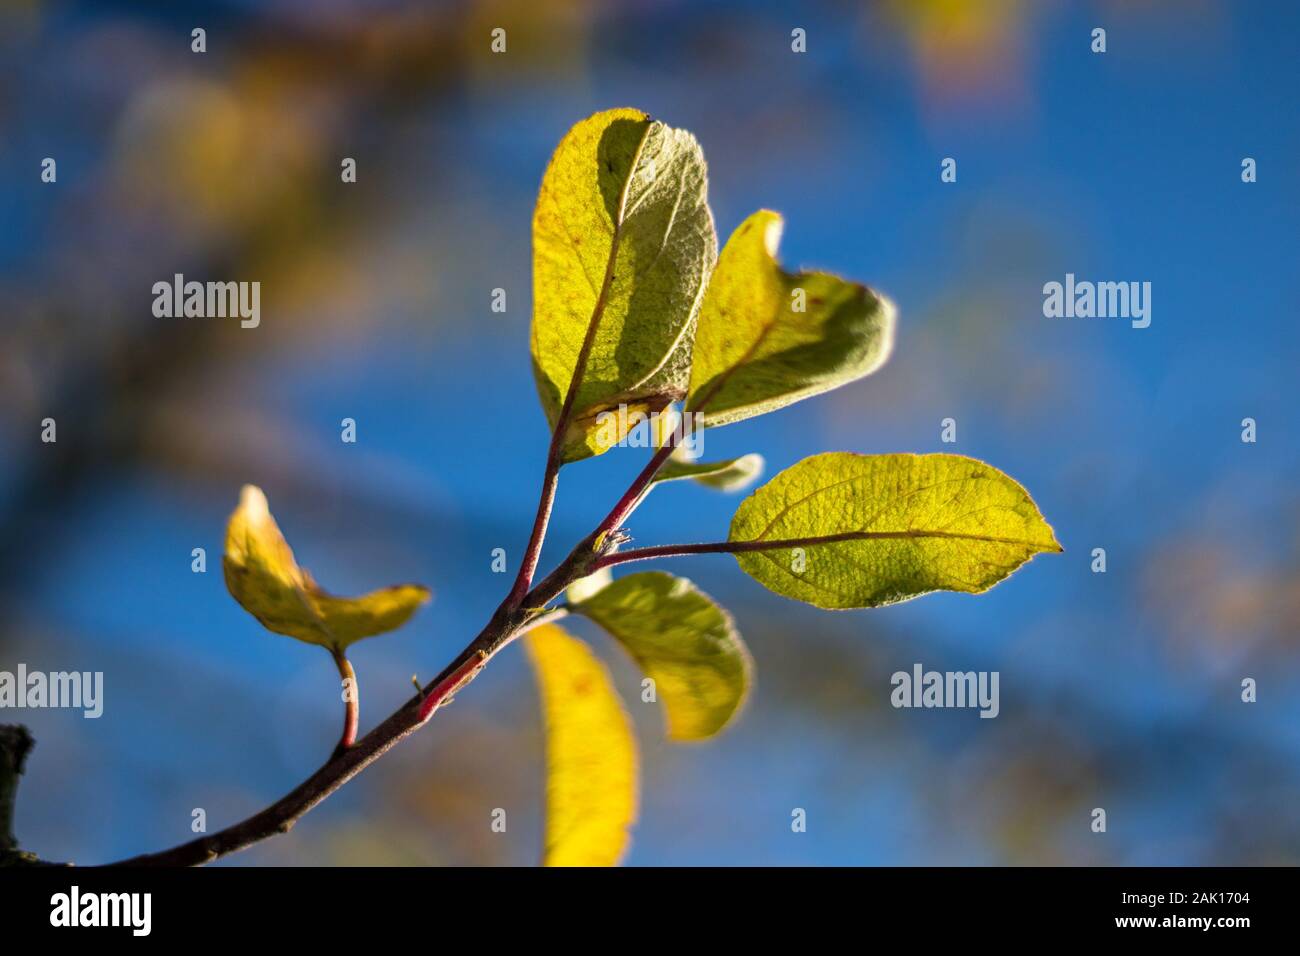 Herbstlaub am Baum - kleine Herbstgelbe Blätter an einem apfelsaum, blauer Himmel Stockfoto